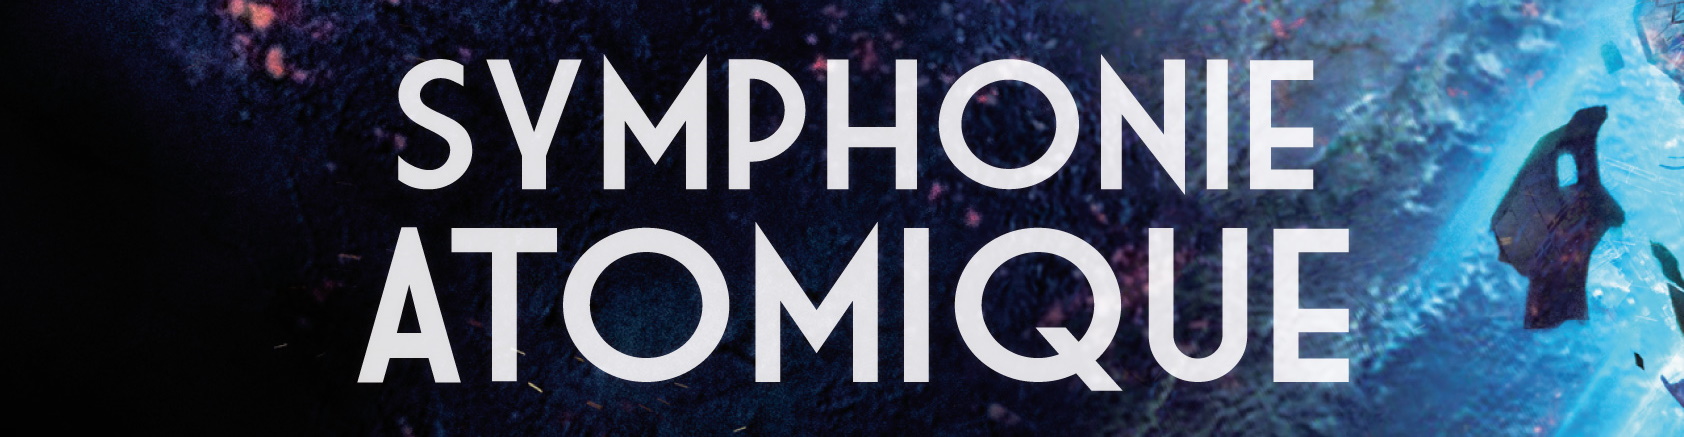 Symphonie atomique - Les secrets d'écriture d'Etienne Cunge